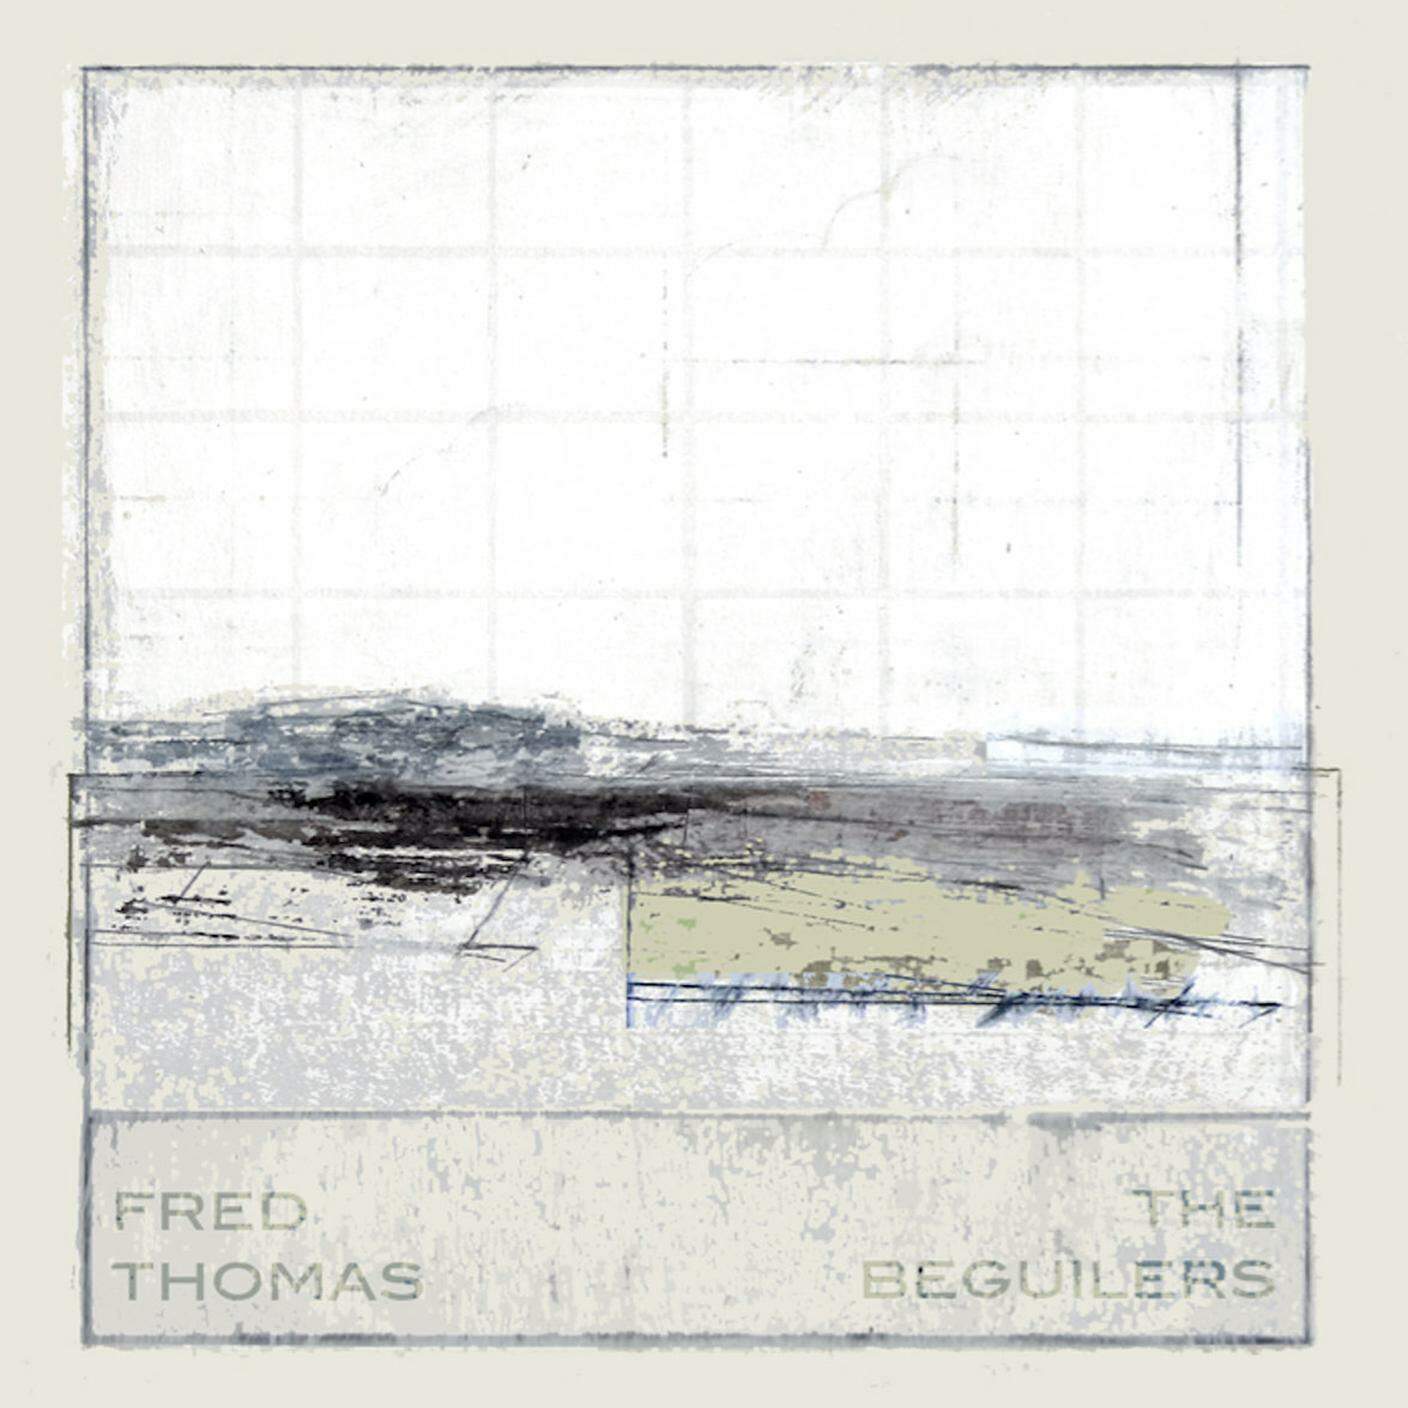 Fred Thomas; "Gentle Lady"; F-IRE Label (dettaglio copertina)